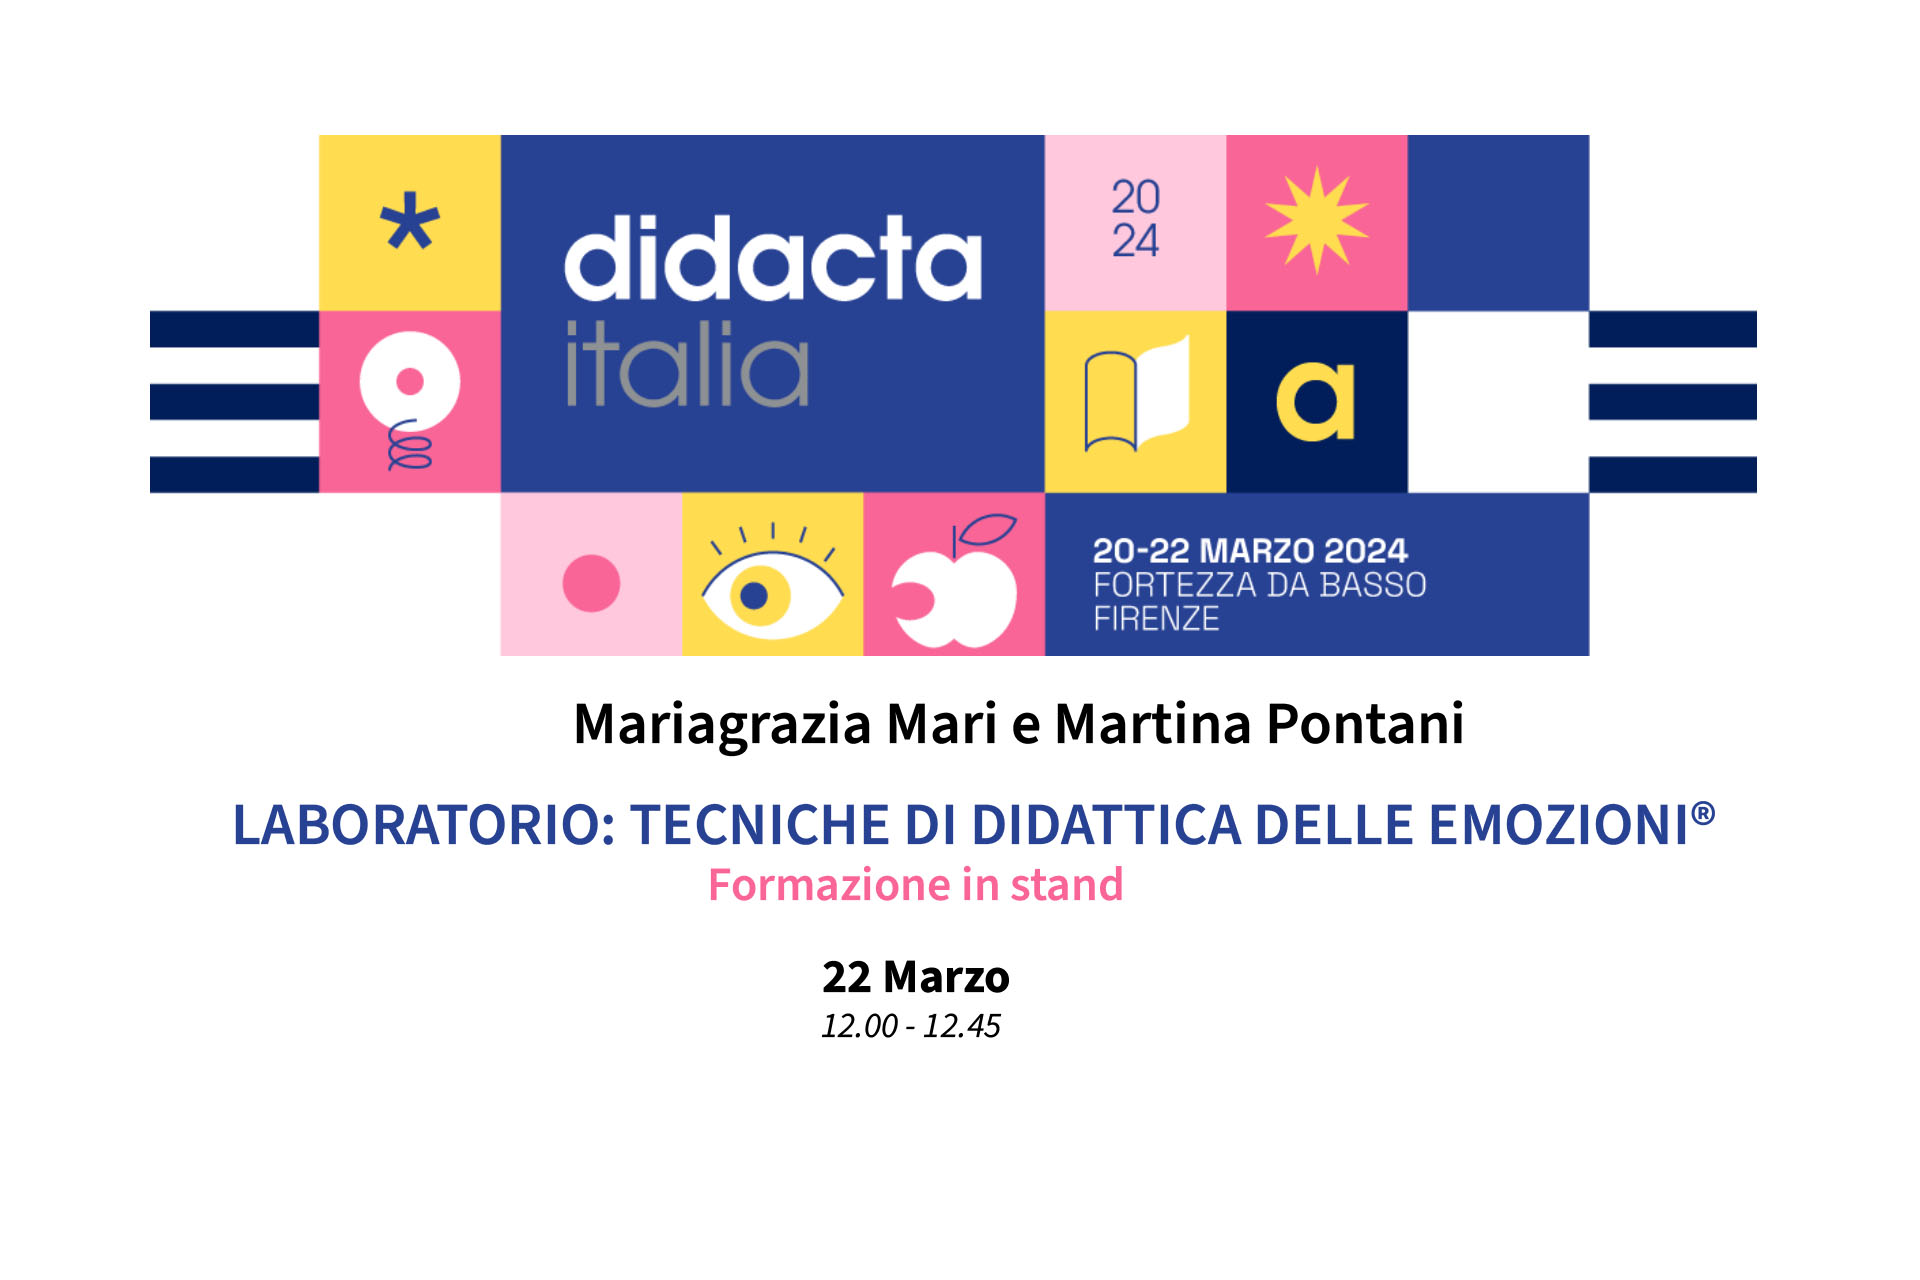 Didacta Italia 2024: Laboratorio: Tecniche di Didattica delle EmozioniLaboratorio: Tecniche di Didattica delle Emozioni® - 22 Marzo